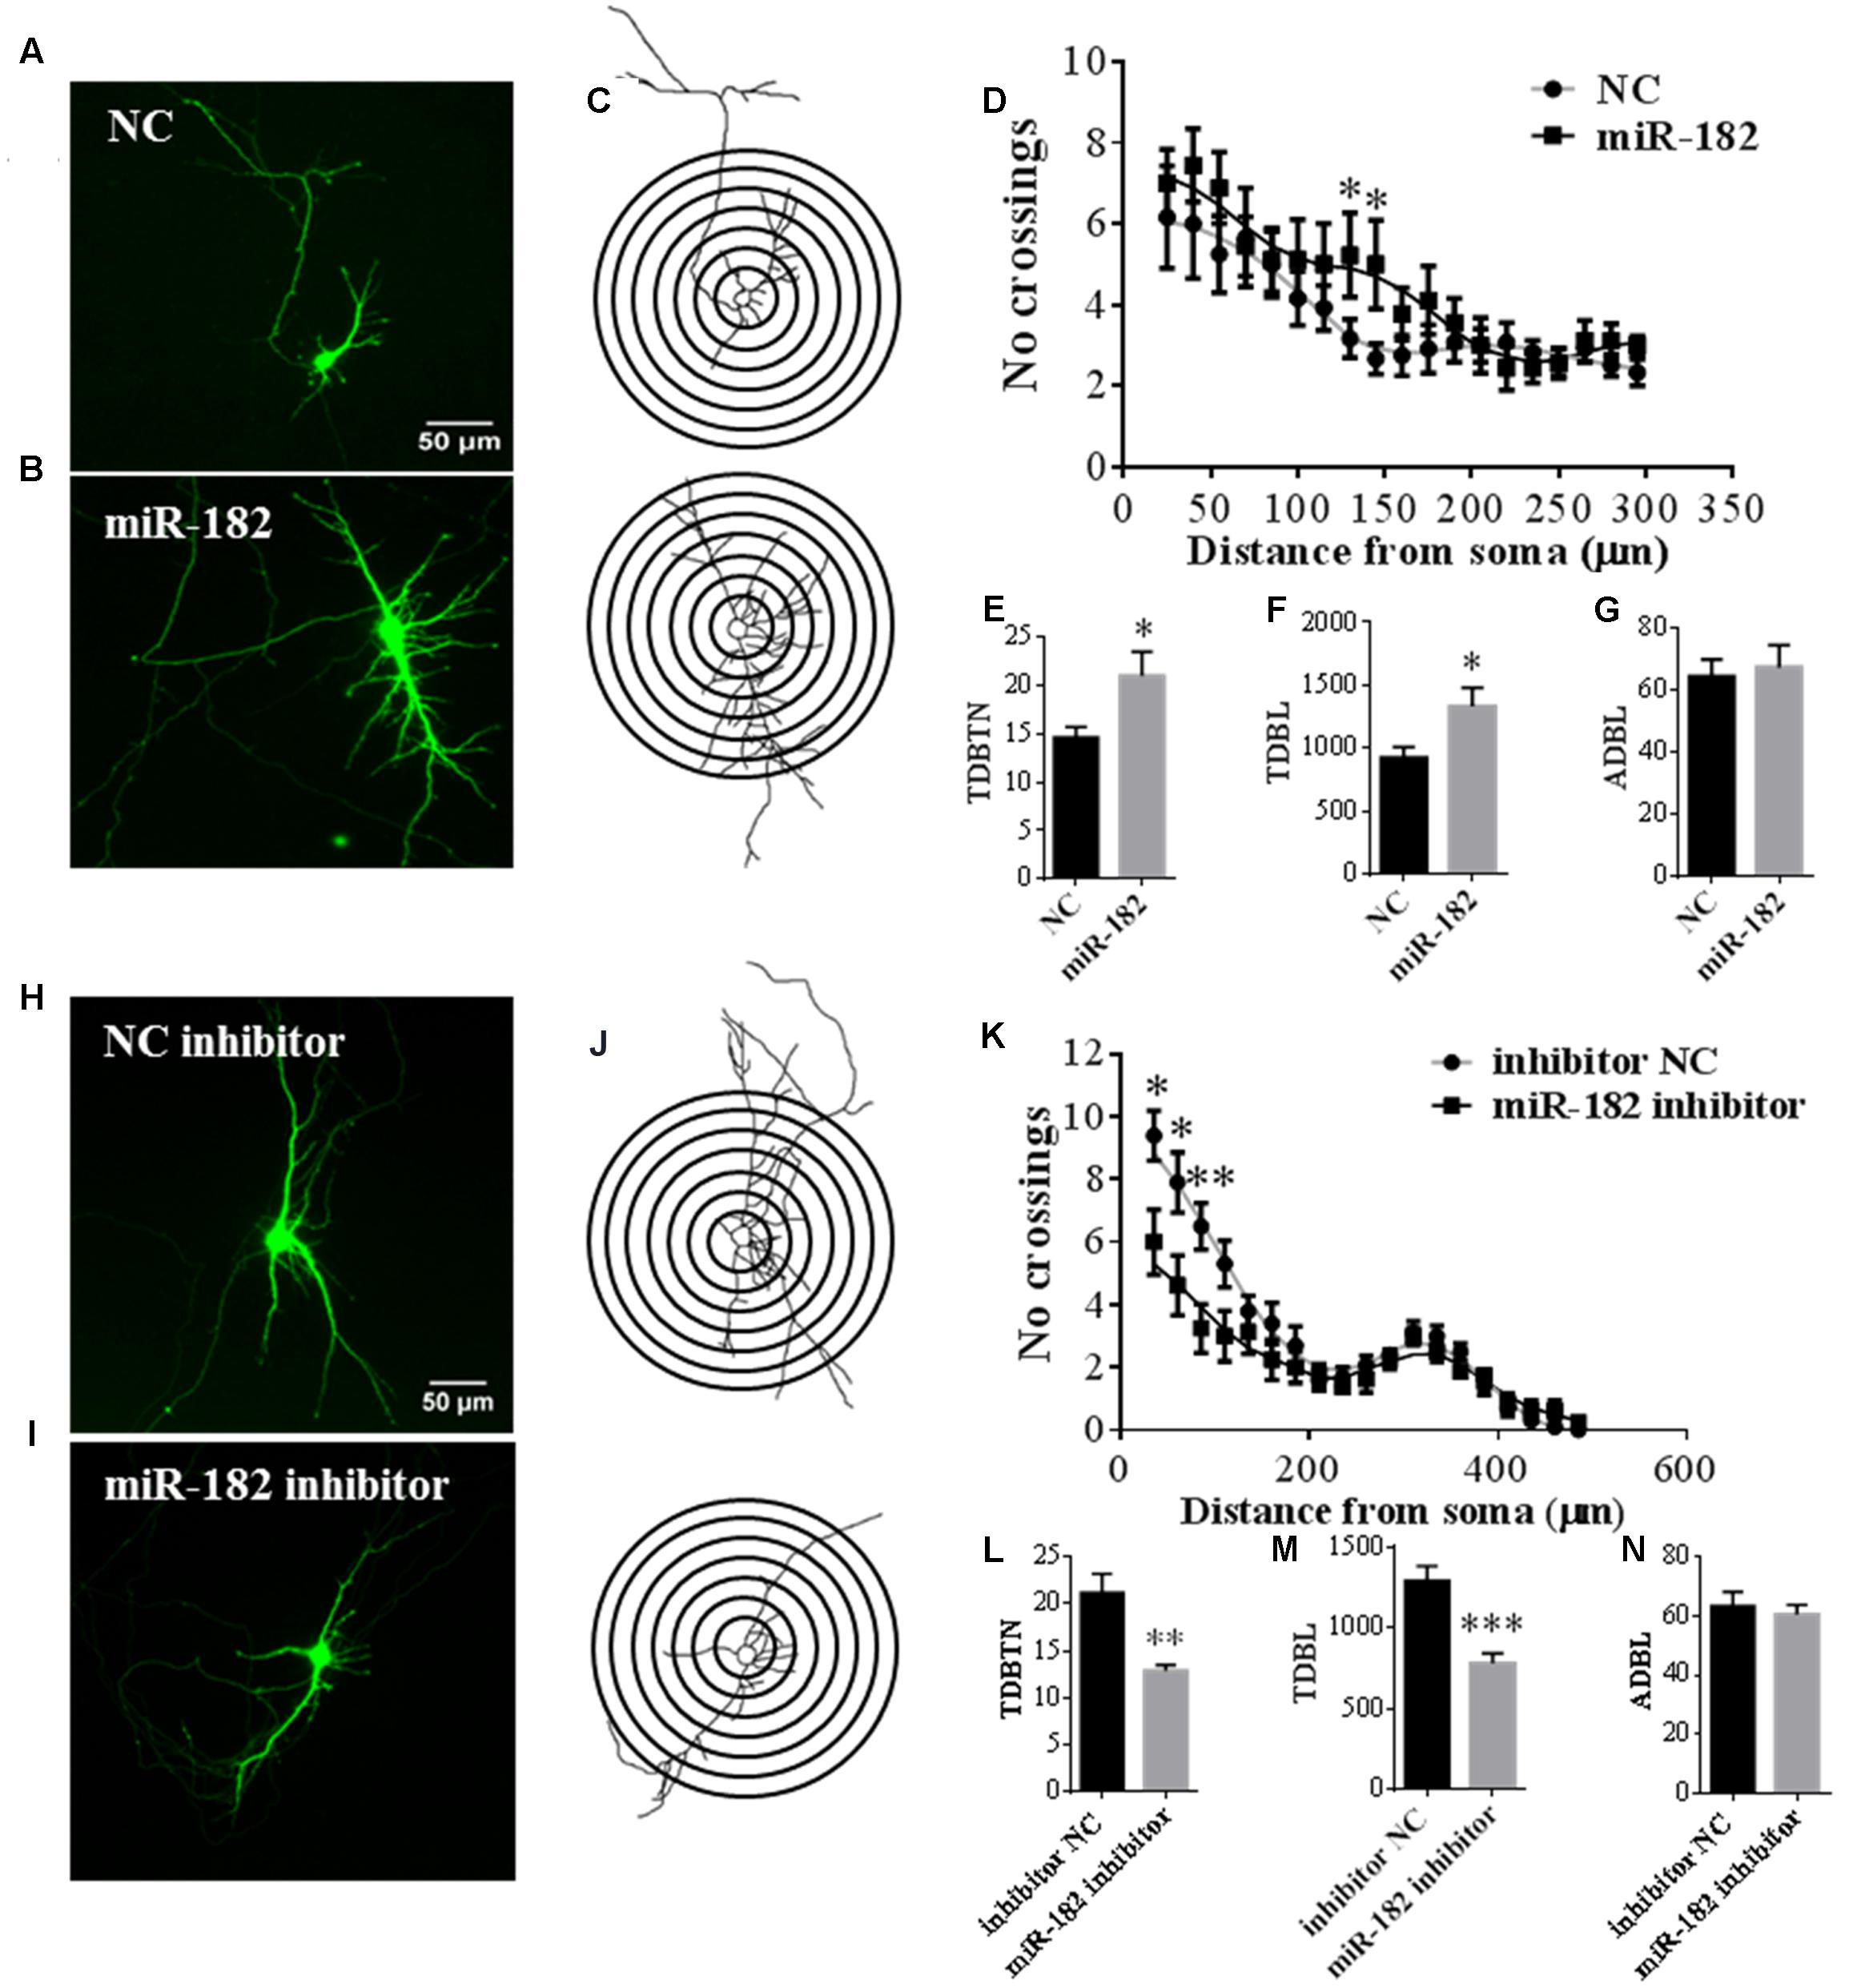 neuron dendrite analysis